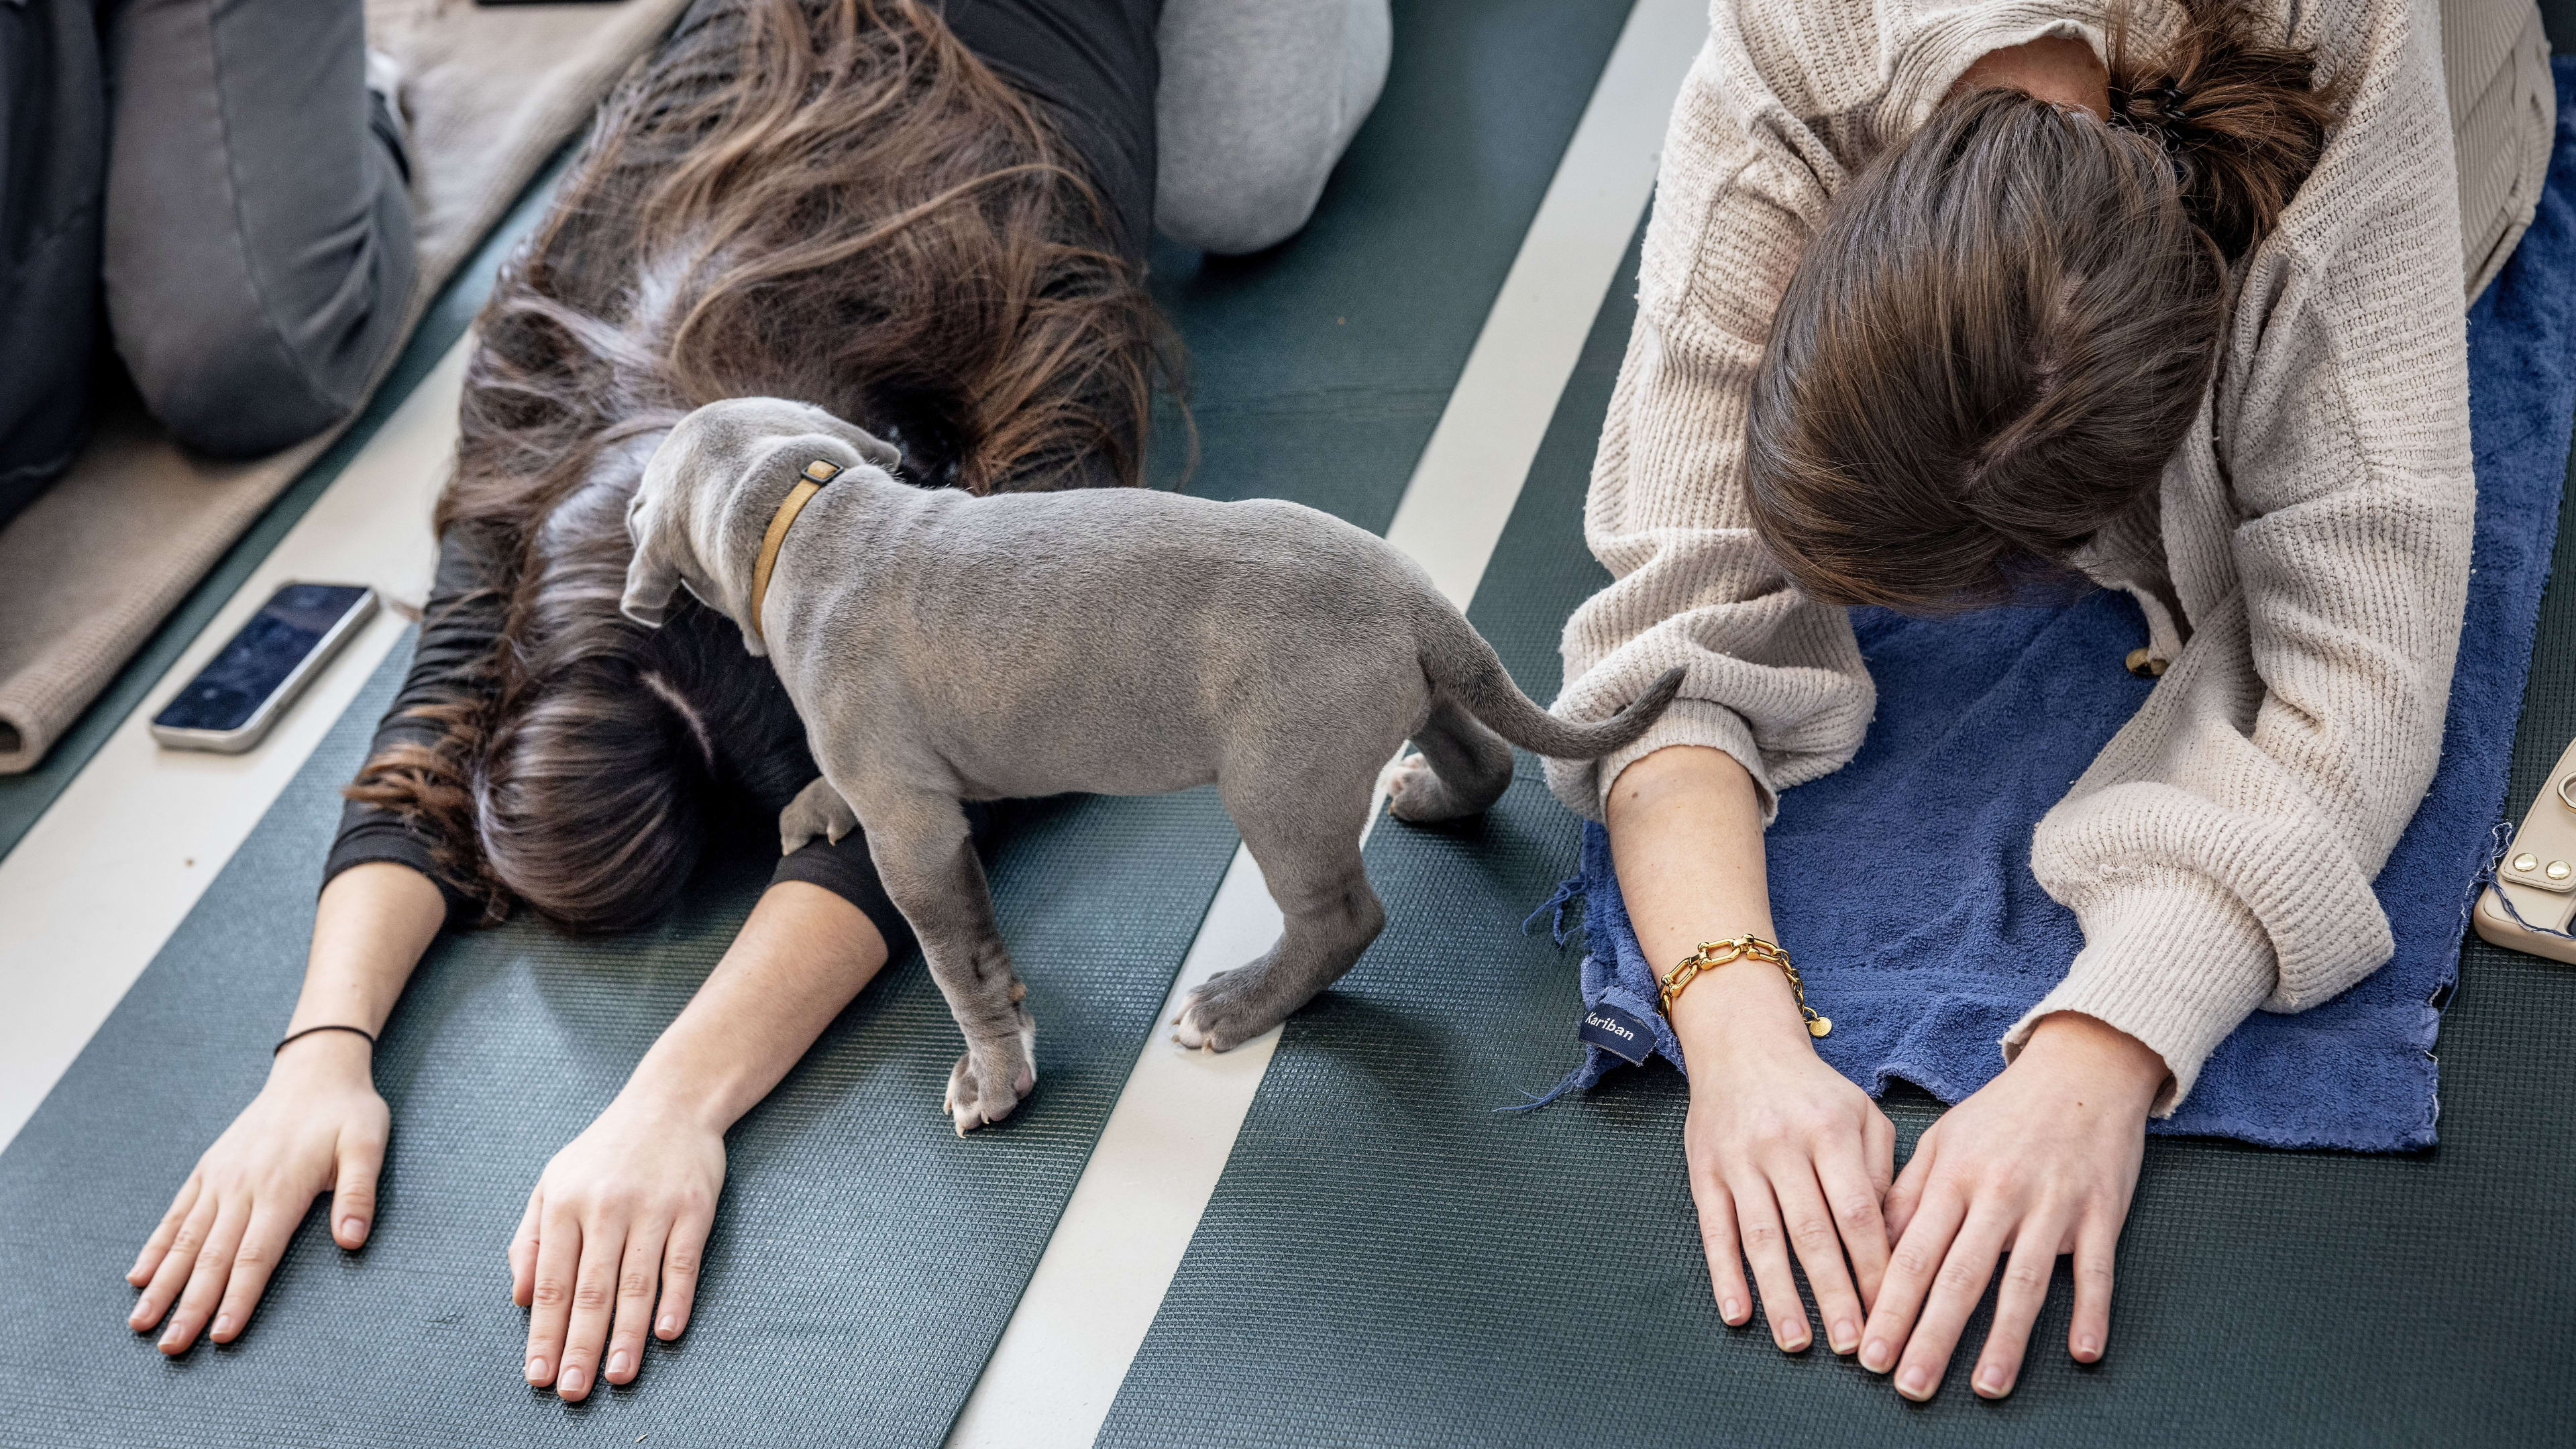 We doen steeds vaker aan puppy-yoga, maar dierenorganisaties zijn bezorgd